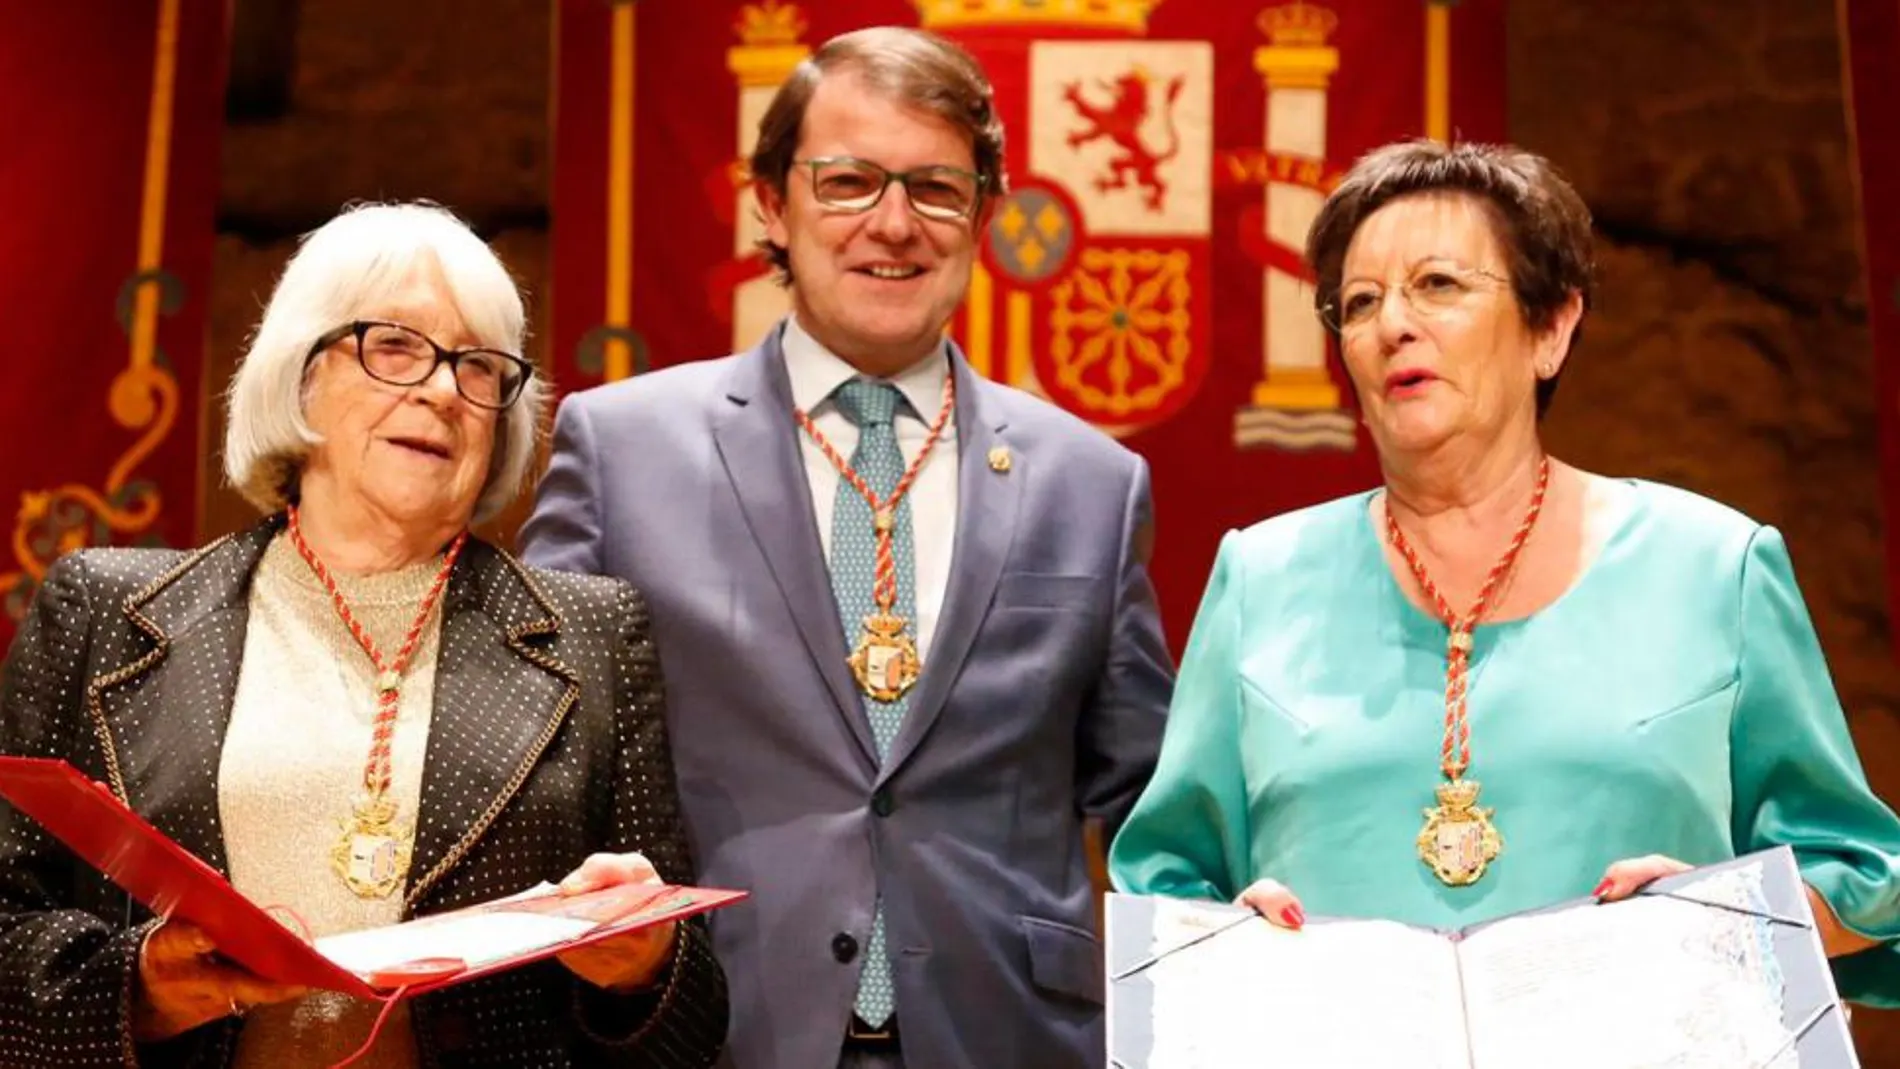 El alcalde de Salamanca, Alfonso Fernández Mañueco, entrega la Medalla de Oro de la ciudad a Isabel Villar y a Magdalena Hernández, presidenta de la Asociación de Familiares de Enfermos de Alzheimer